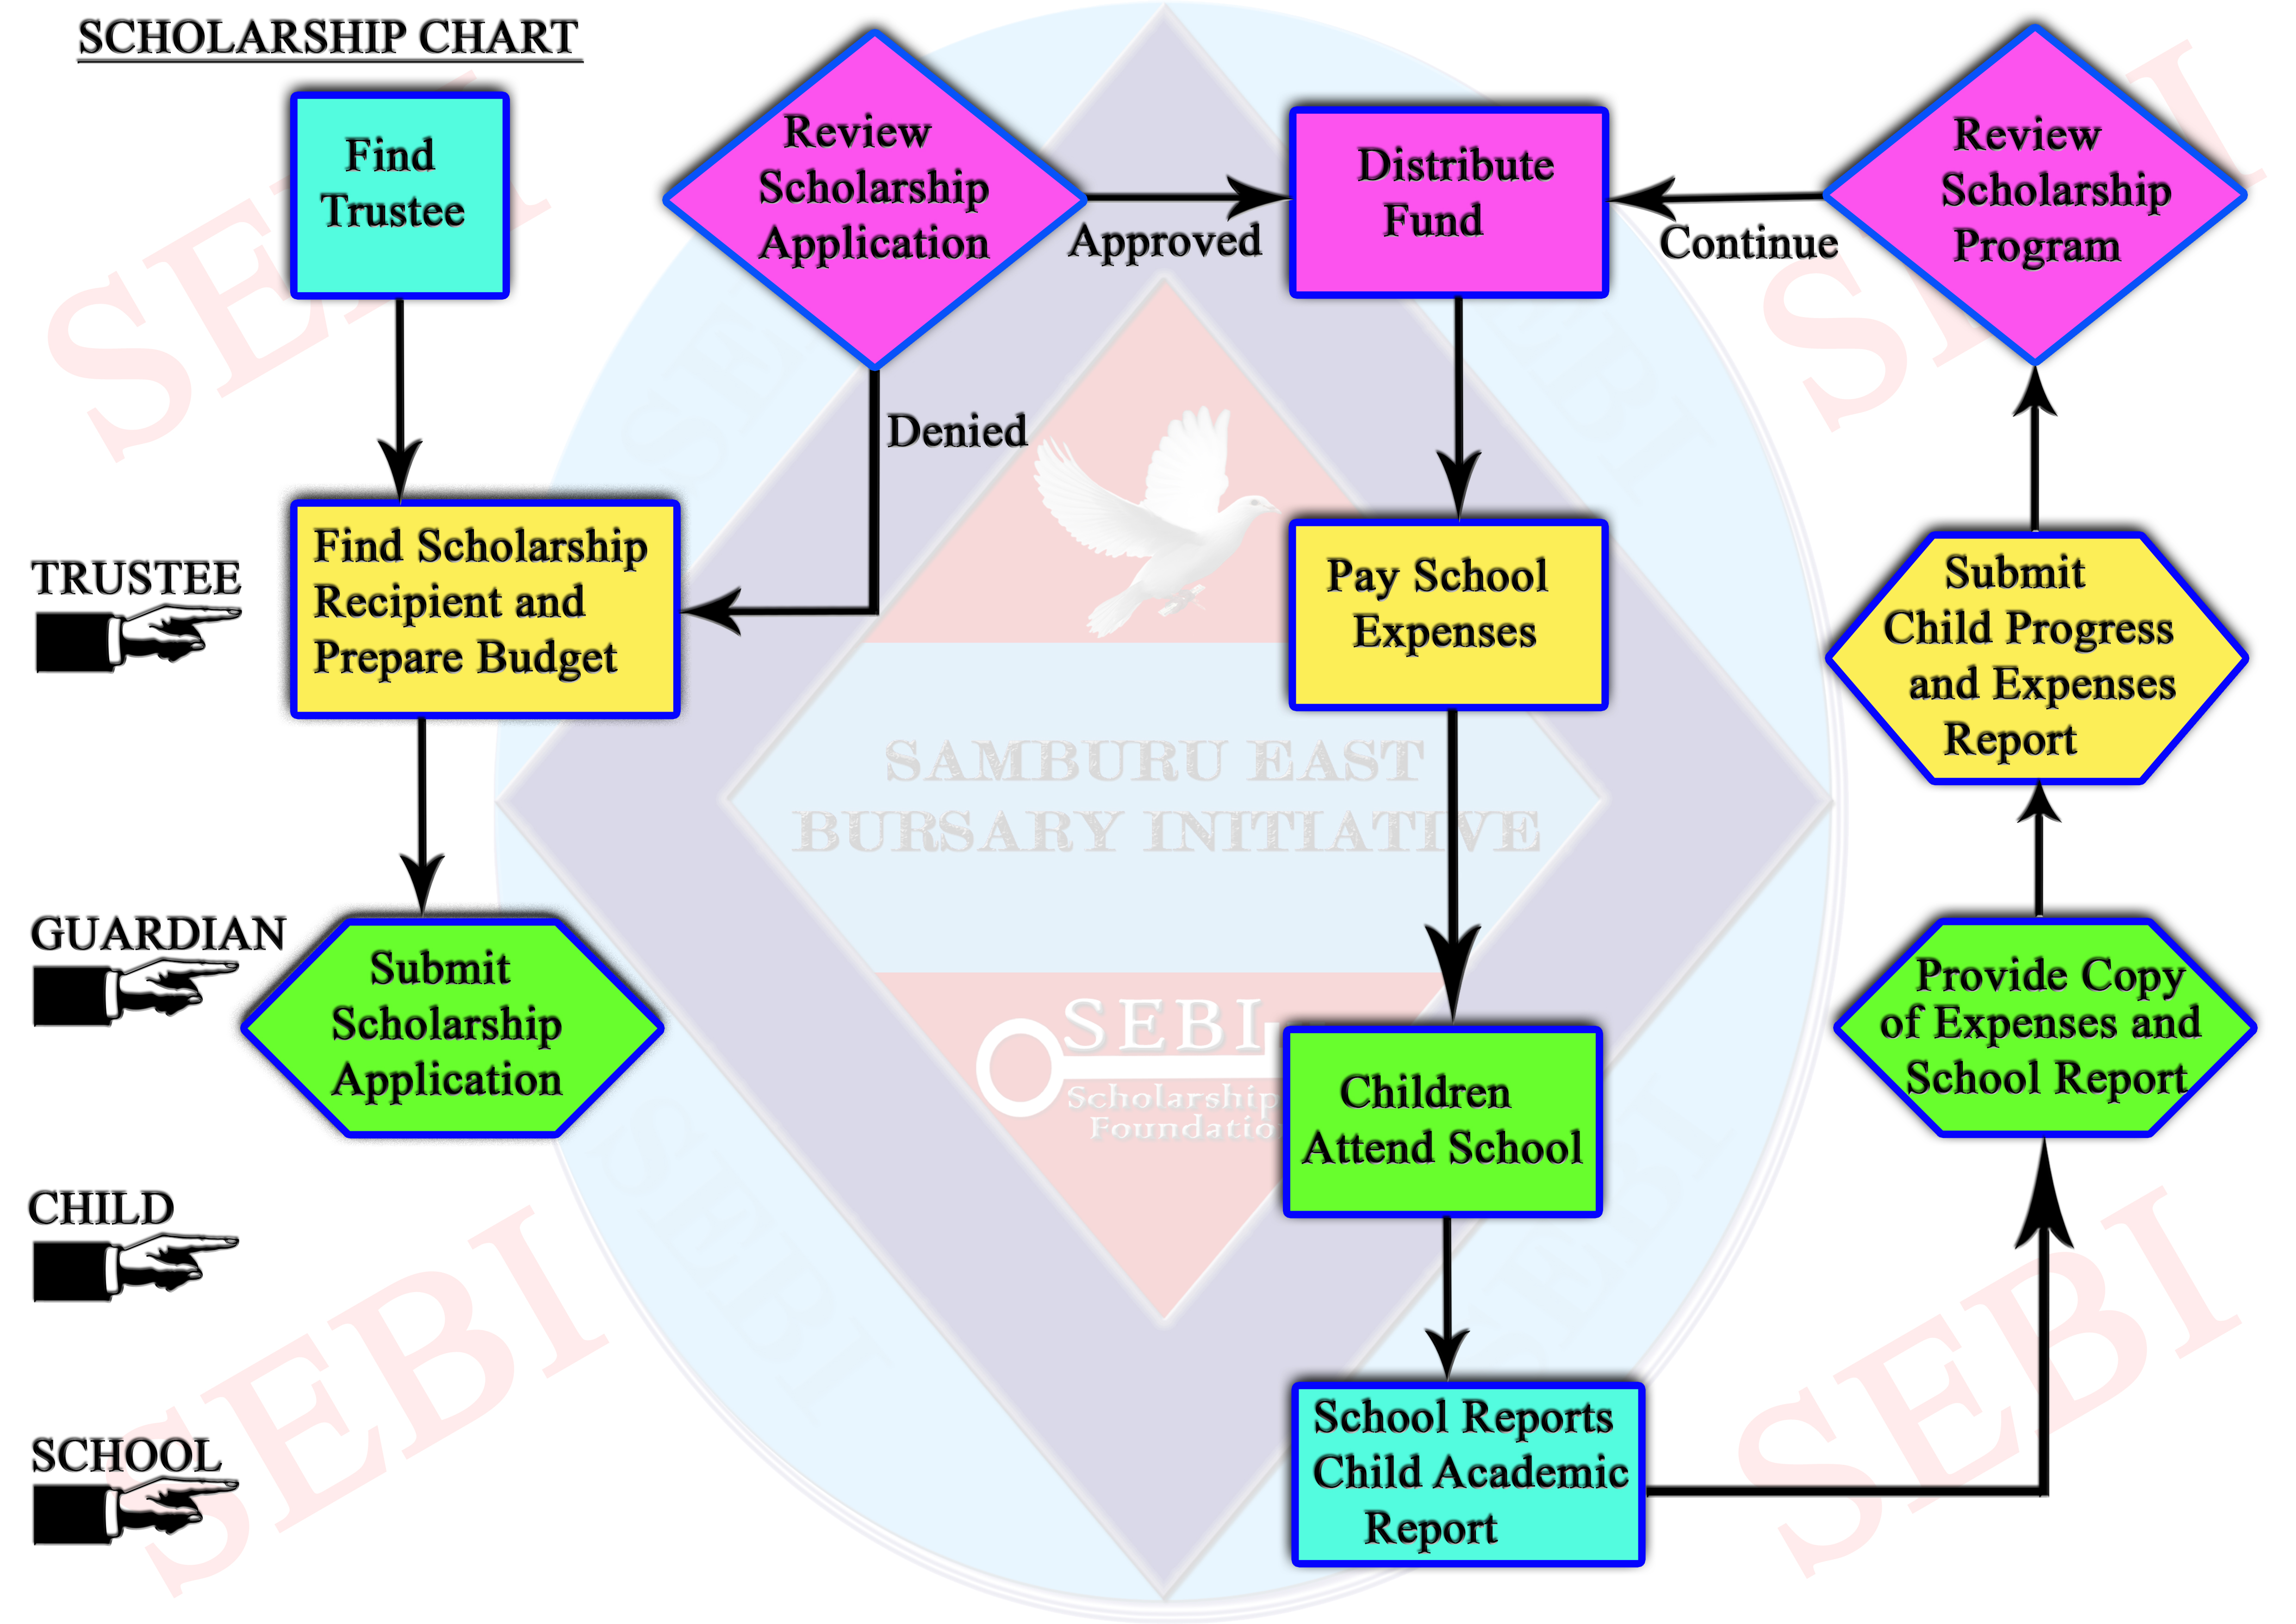 Sebi Chart